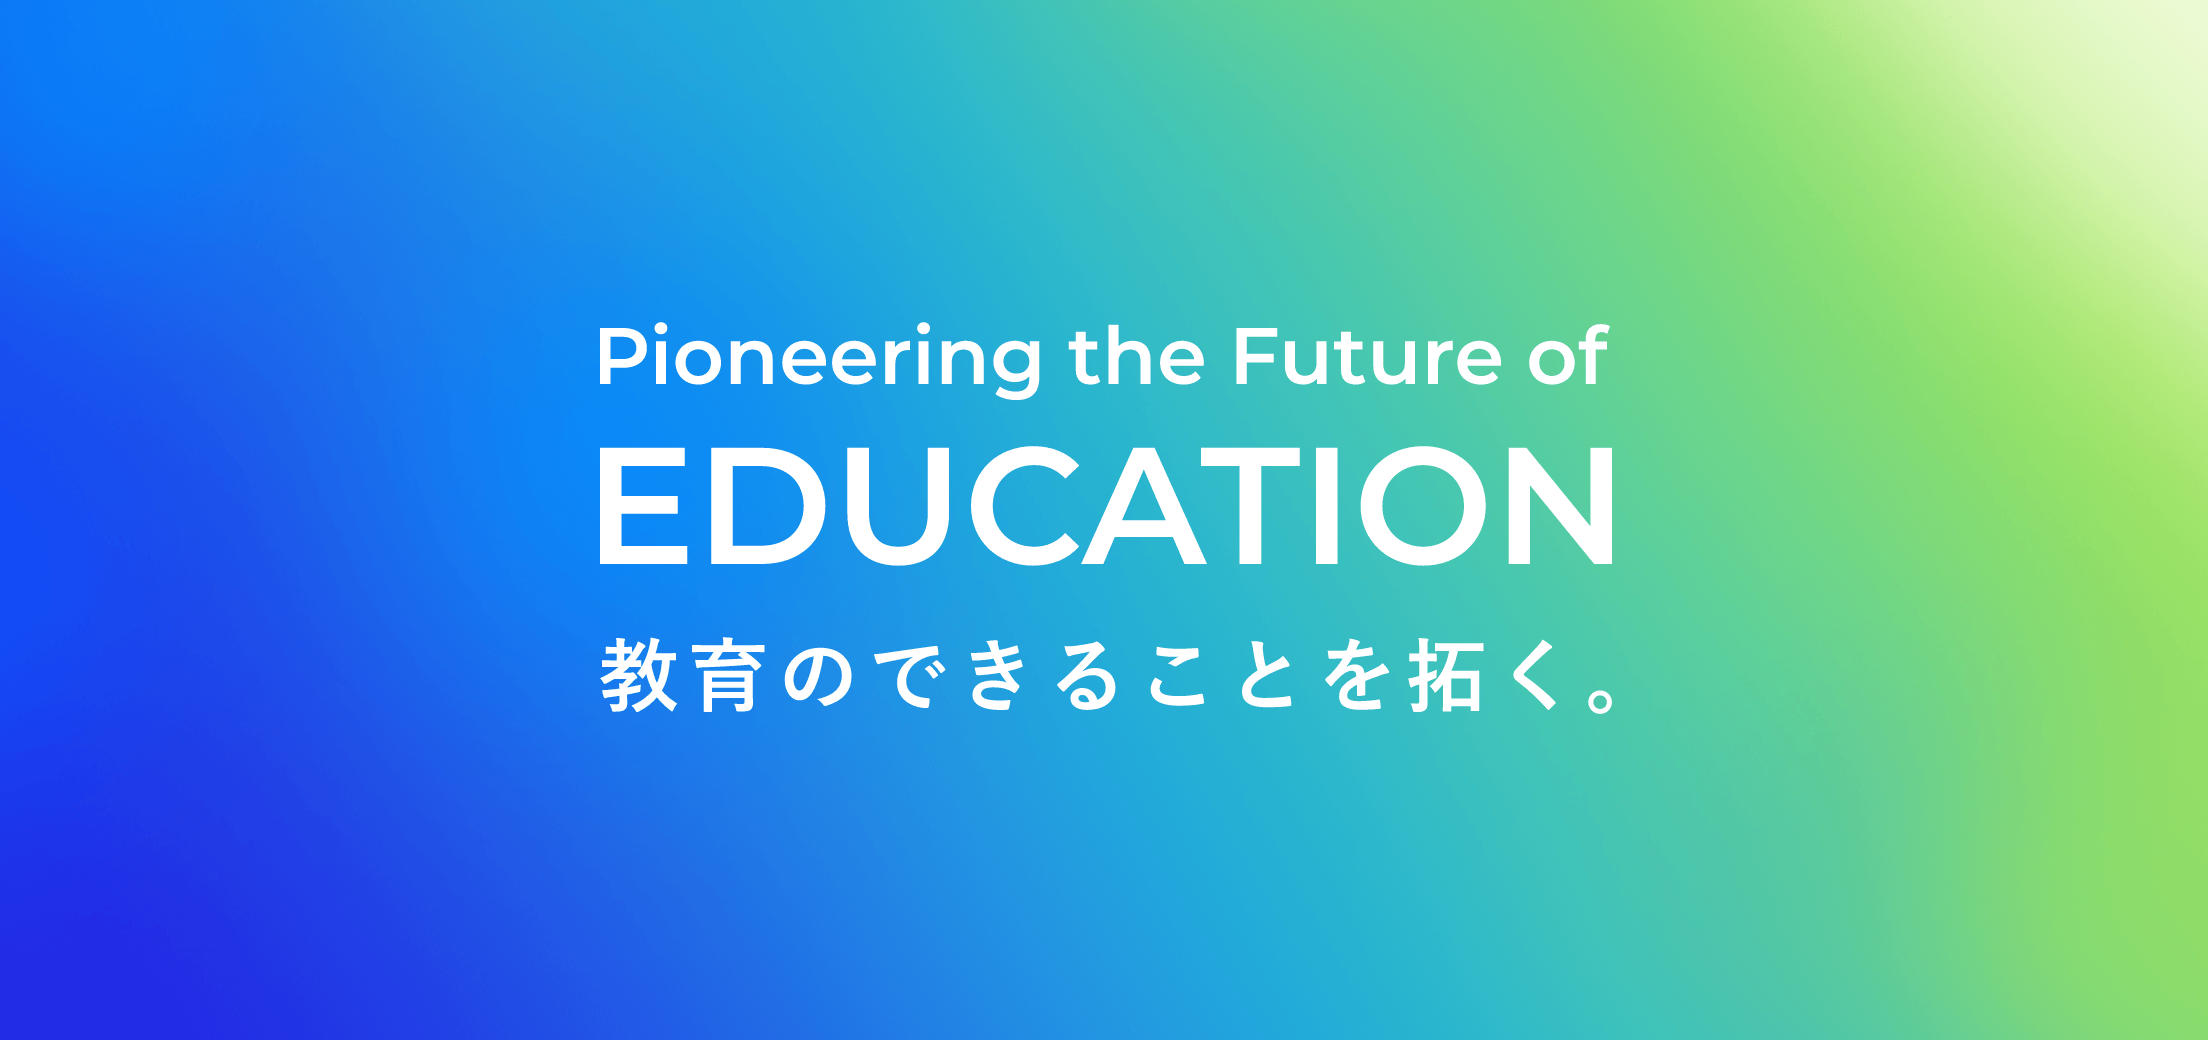 Pioneering the Future of Education　教育のできることを拓く。